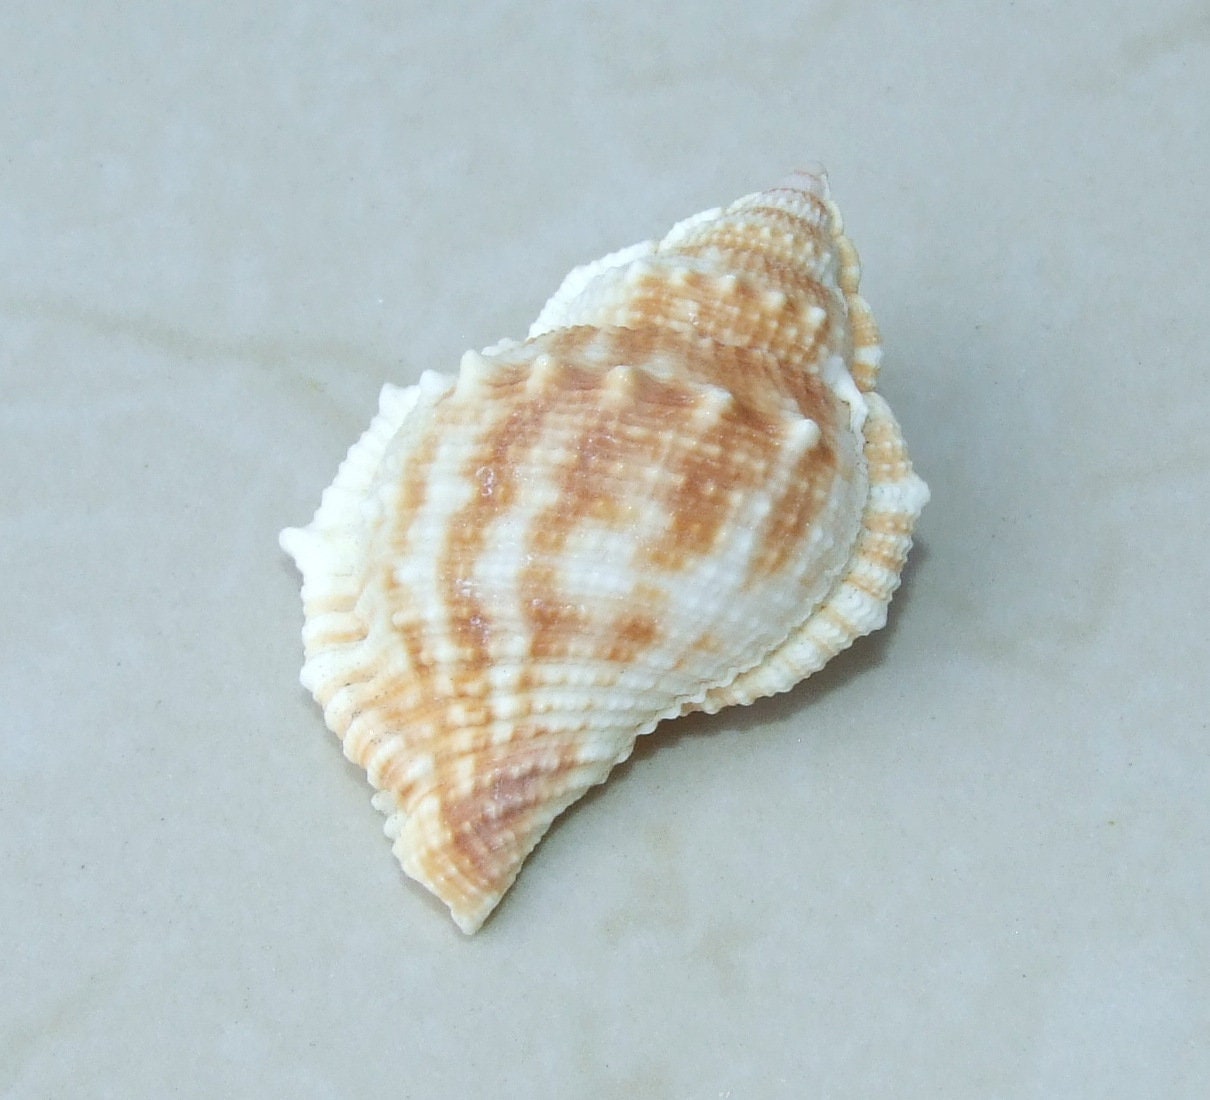 Big Sea Shell Conch Natural, Large Natural Sea Shells